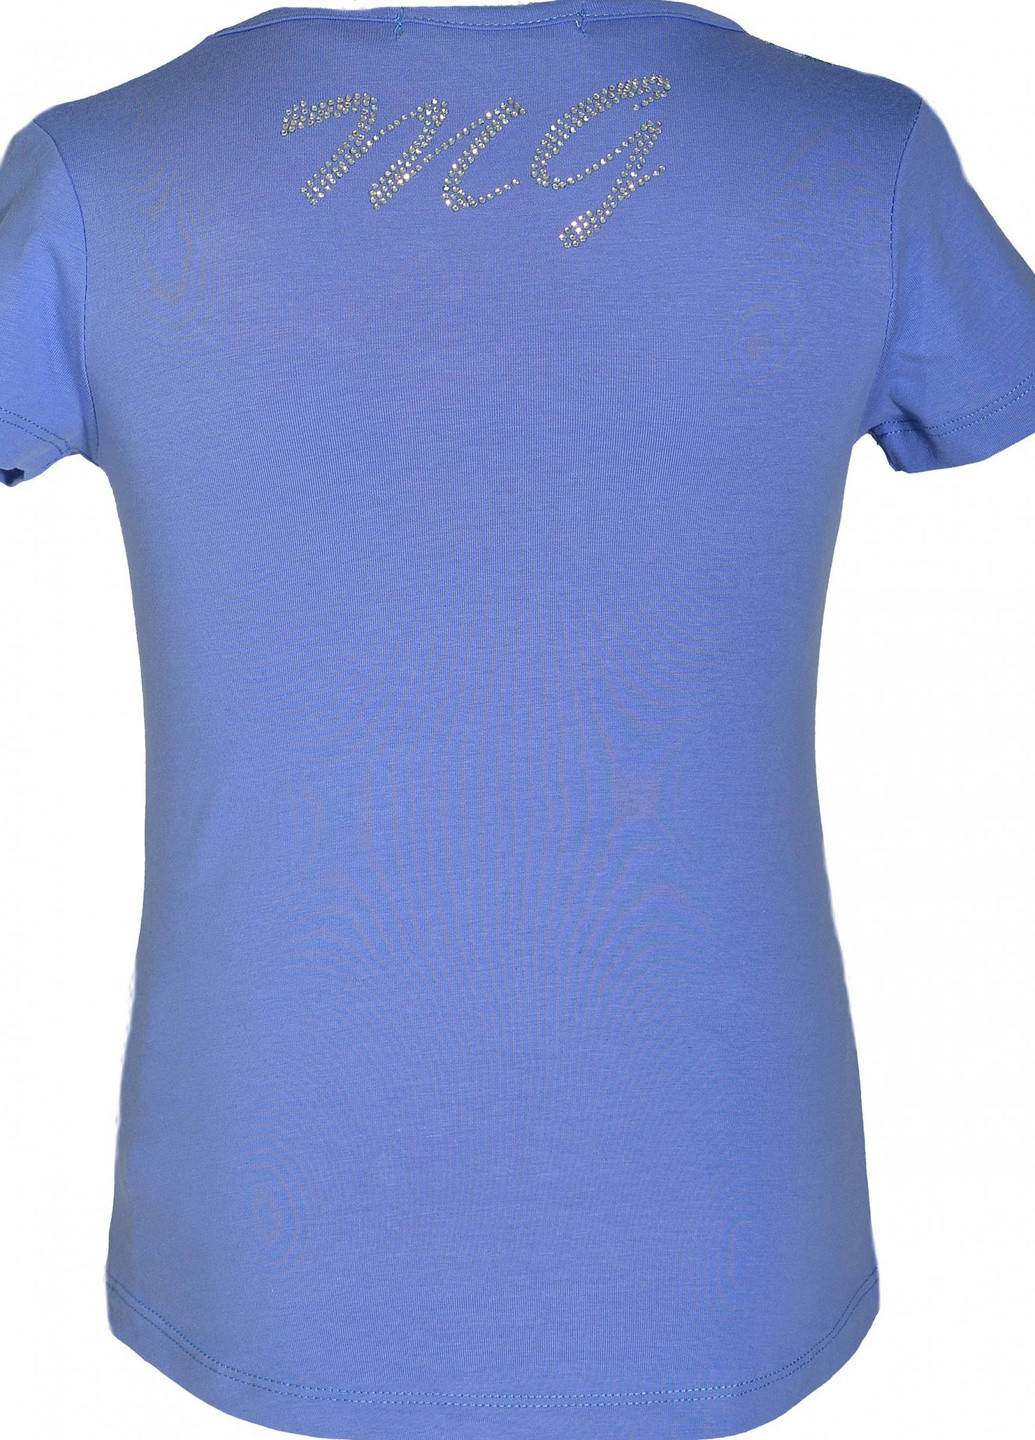 Фиолетовая футболки футболка на дівчаток (101)11860-736 Lemanta